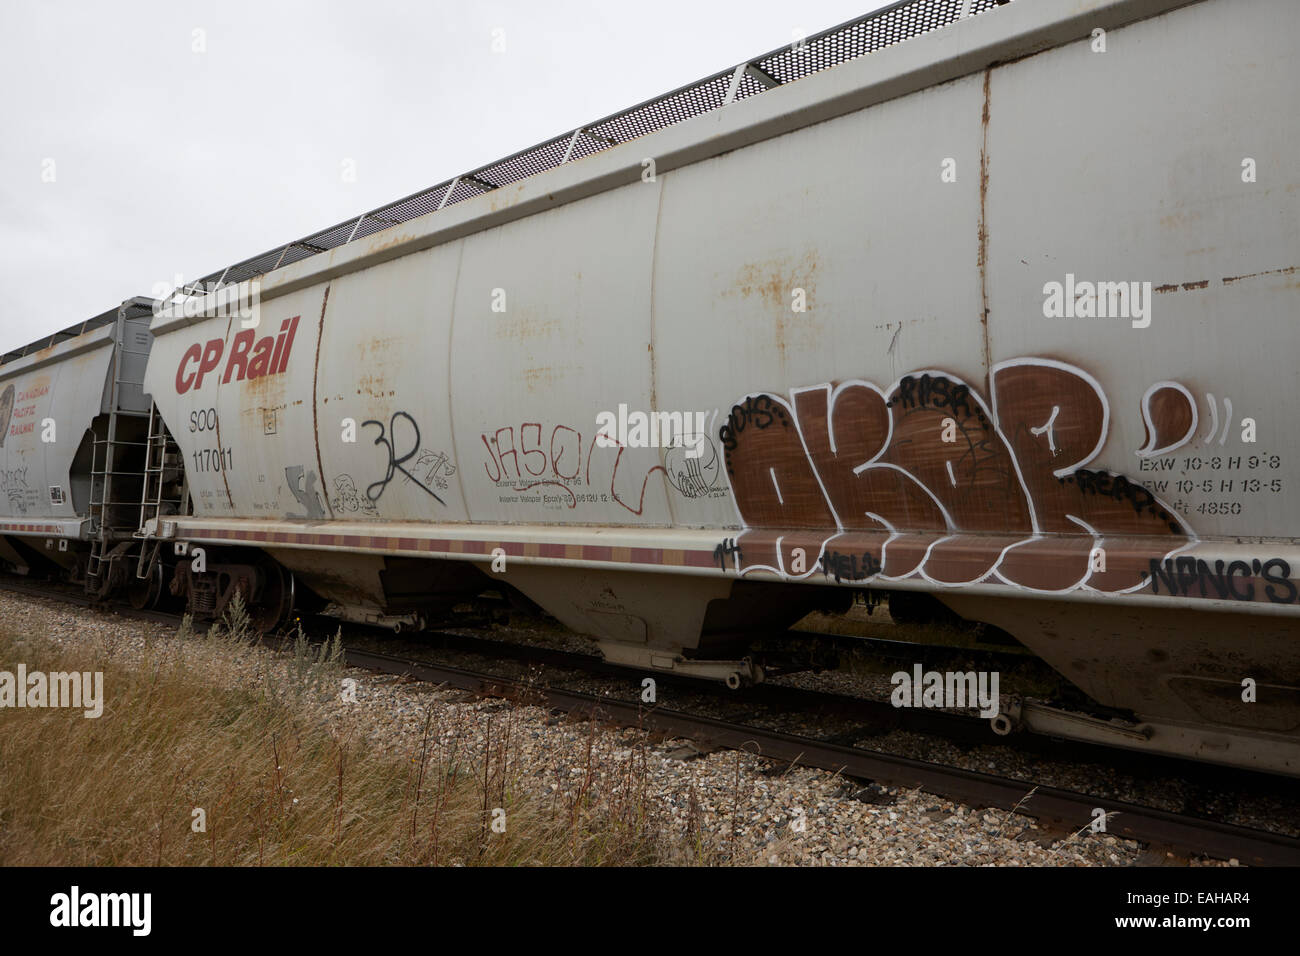 Cp rail freight camions de grain avec tag graffiti sur l'ancien chemin de fer Canadien Pacifique Canada Saskatchewan Banque D'Images